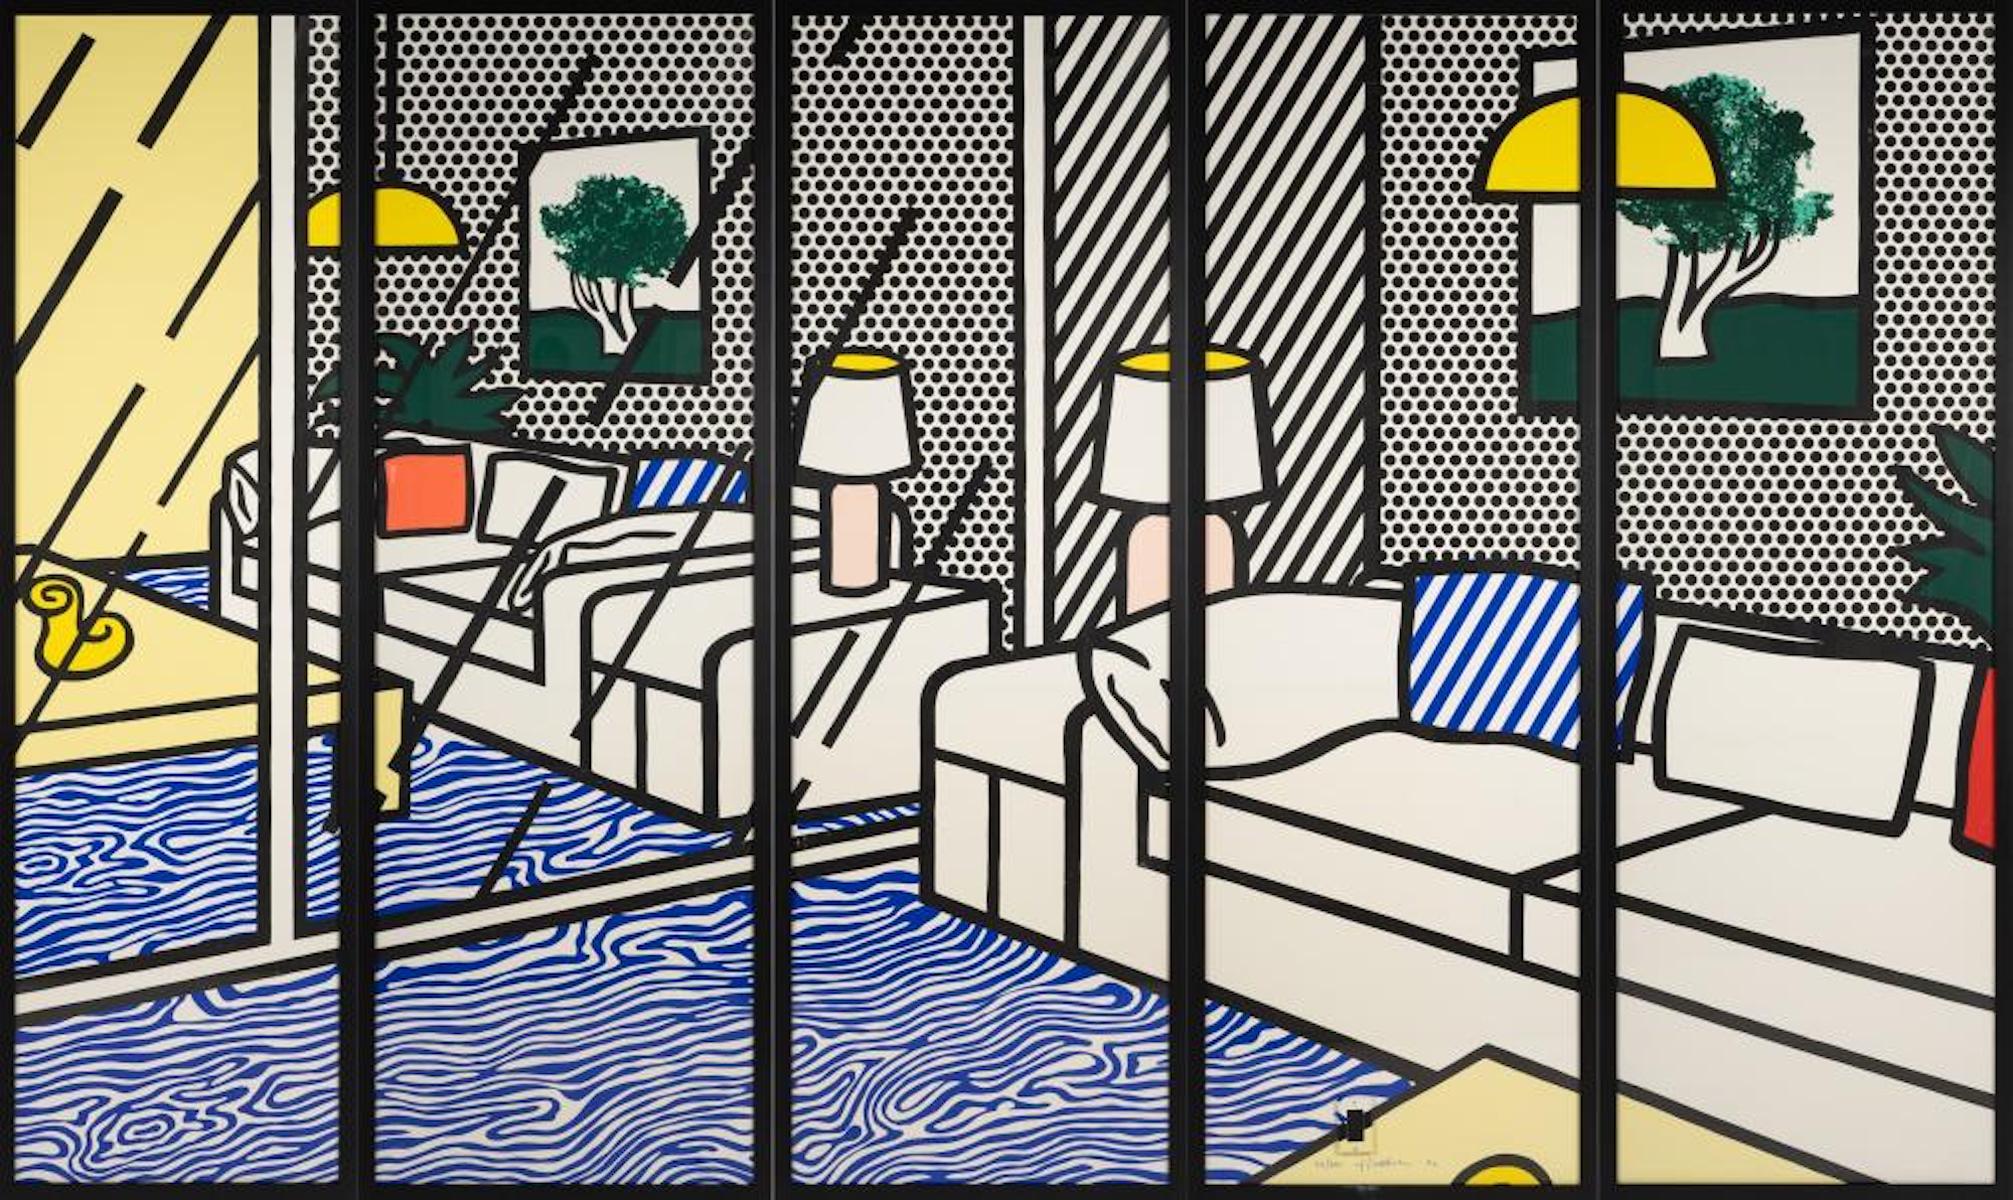 ROY LICHTENSTEIN (1923-1997)

Wallpaper with Blue Floor Interior" de Roy Lichtenstein est une sérigraphie de 1992 composée de cinq tirages encadrés sur du papier Waterleaf de Paper Technologies, Inc. Waterleaf. L'œuvre est signée, datée et numérotée